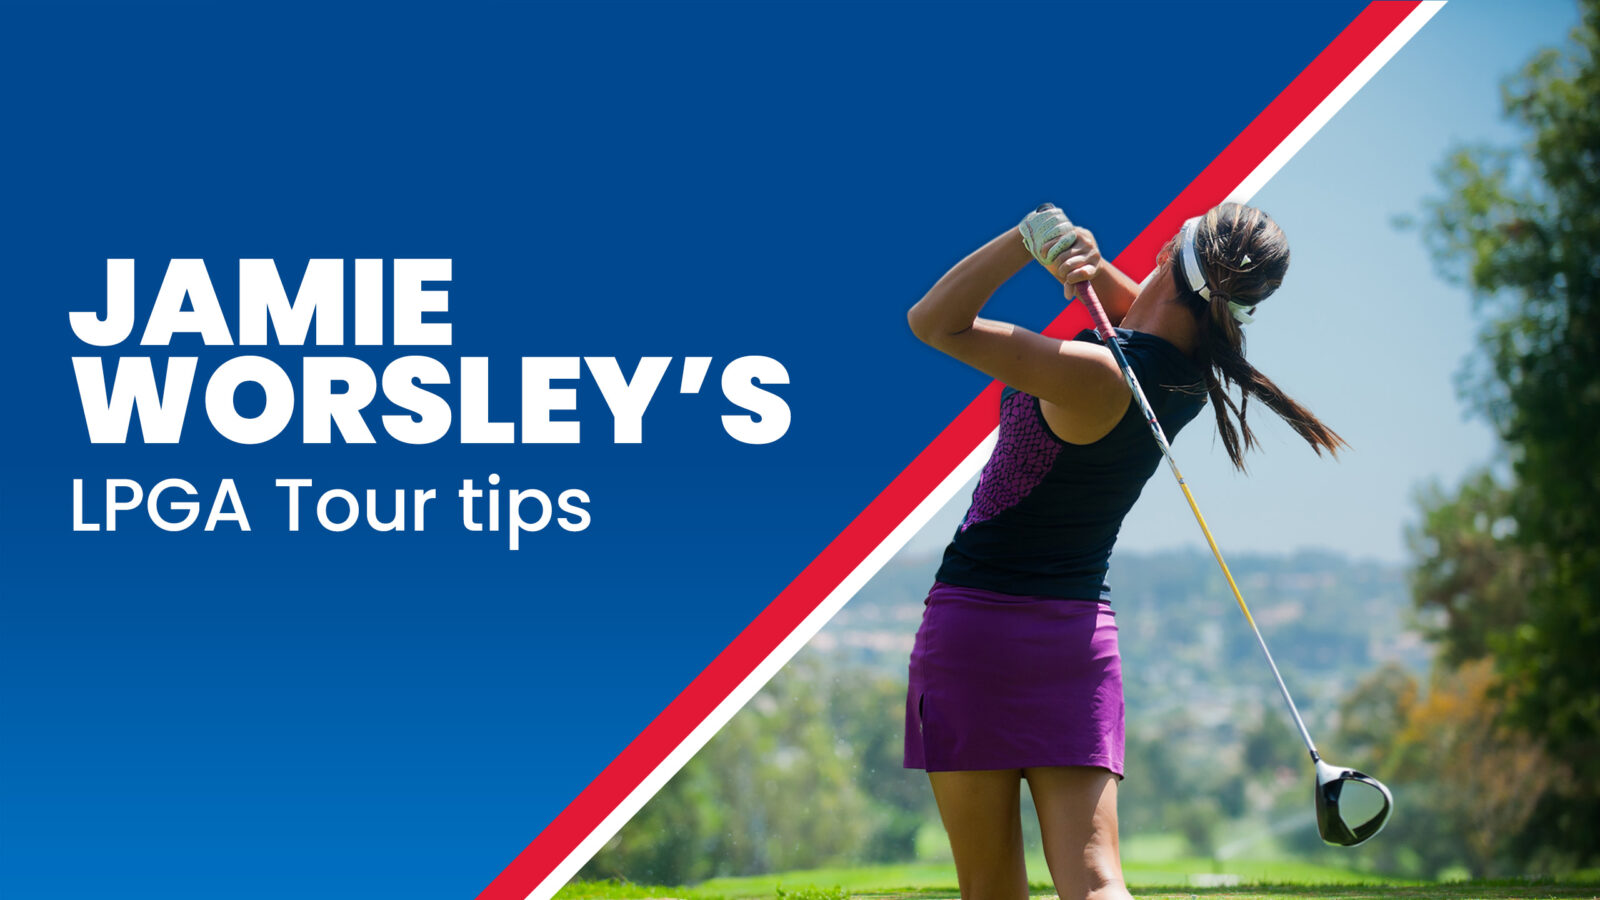 Photo: lpga golf betting tips